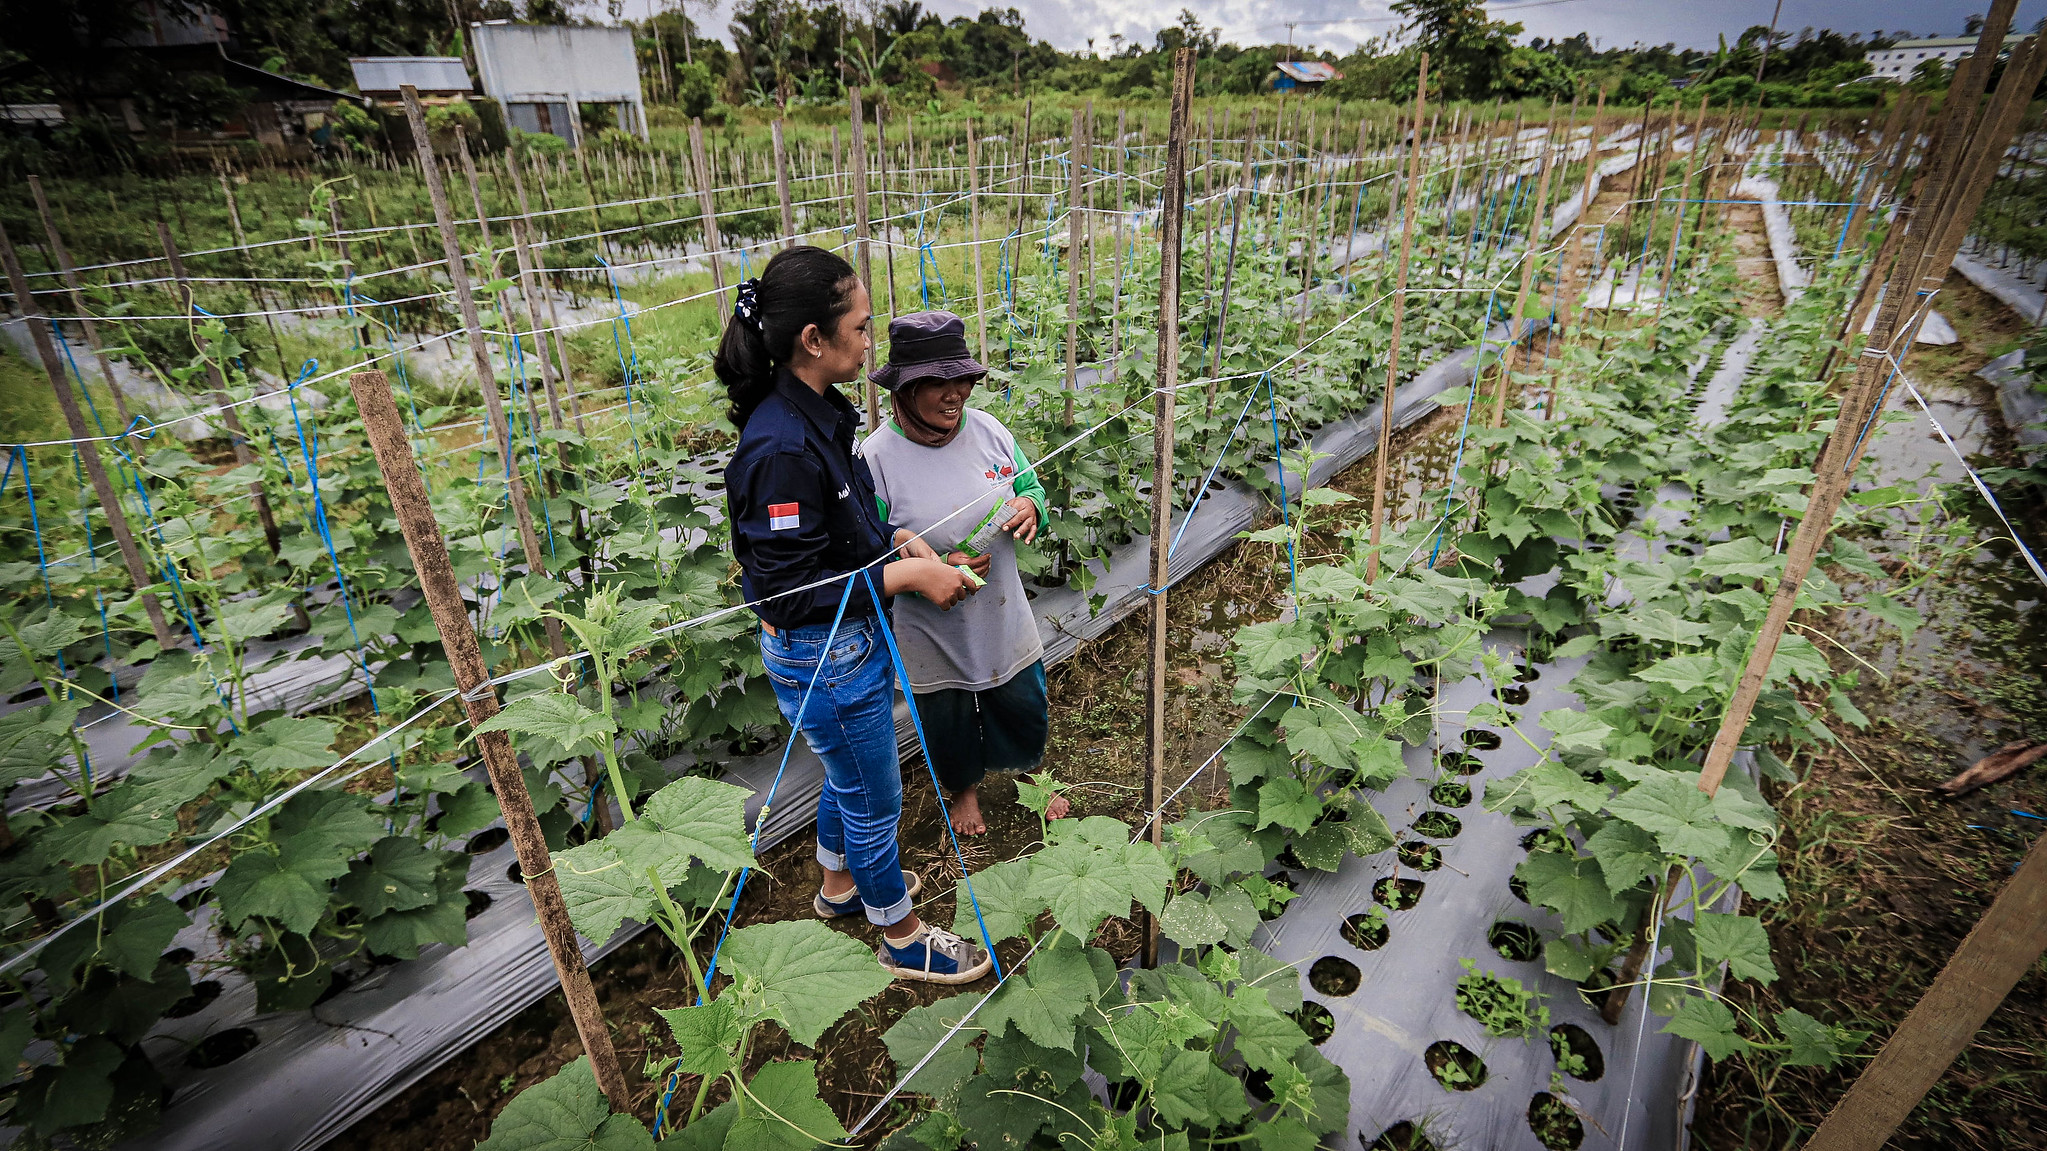 Seorang agronomis perempuan dan petani perempuan berdiskusi di kebun sayuran.